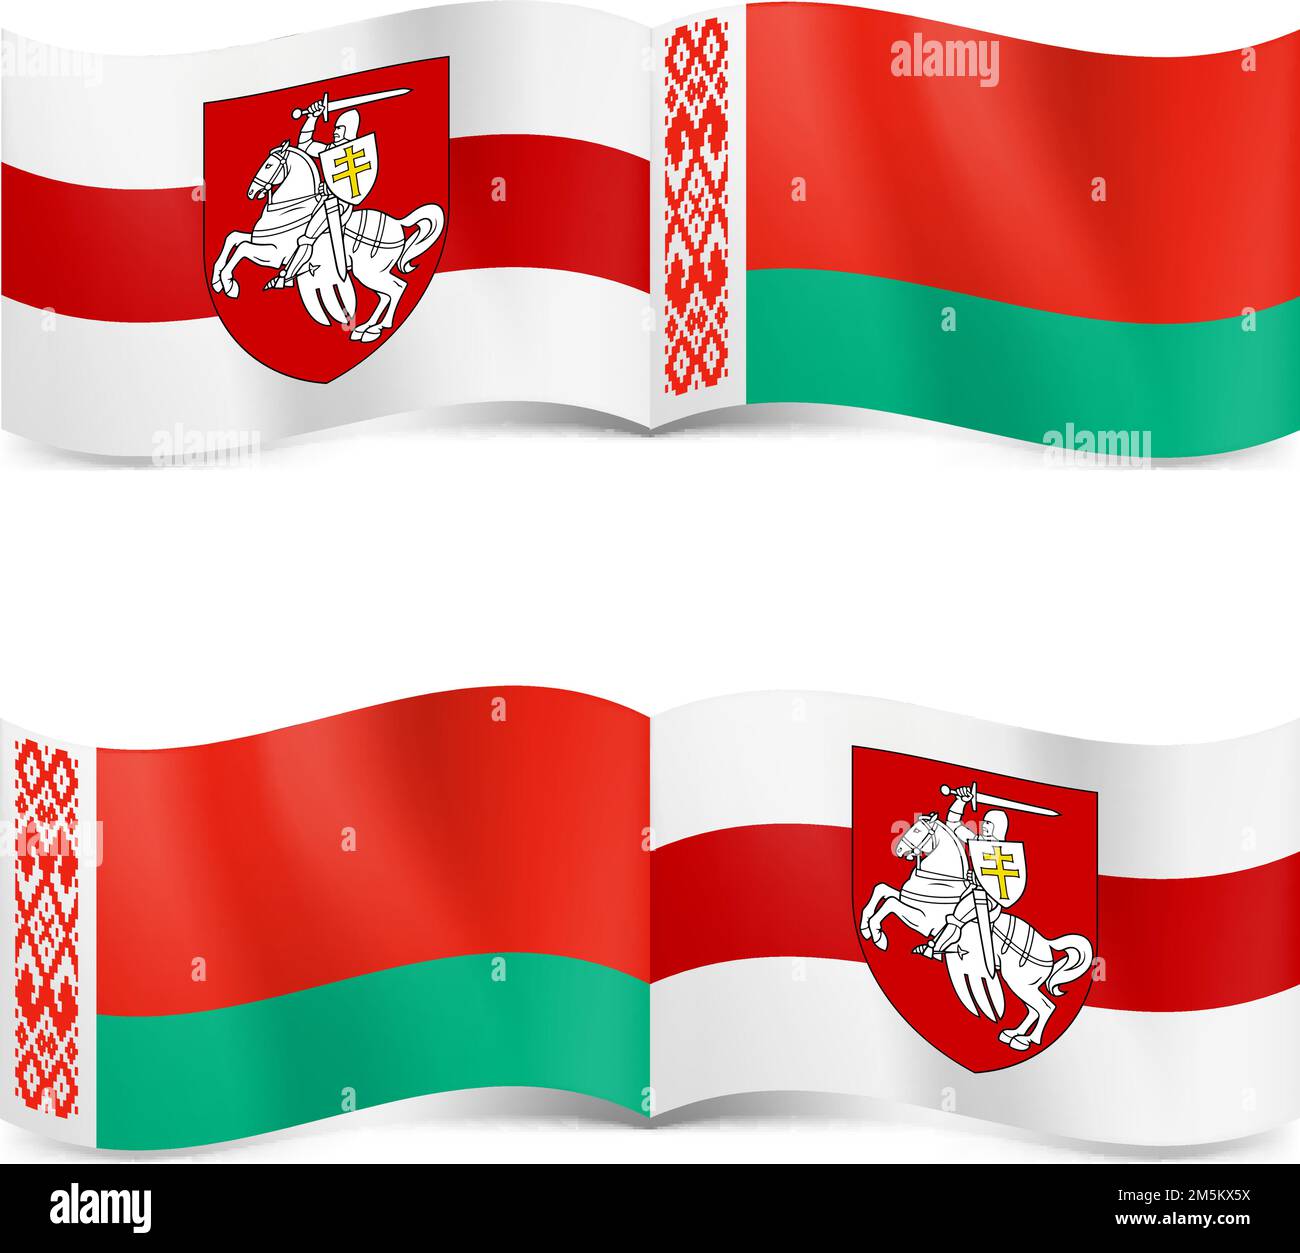 Drapeau d'État de la République du Bélarus et drapeau d'opposition blanc-rouge-blanc du Bélarus. Symbole de la lutte des oppositions contre l'ancien régime Illustration de Vecteur